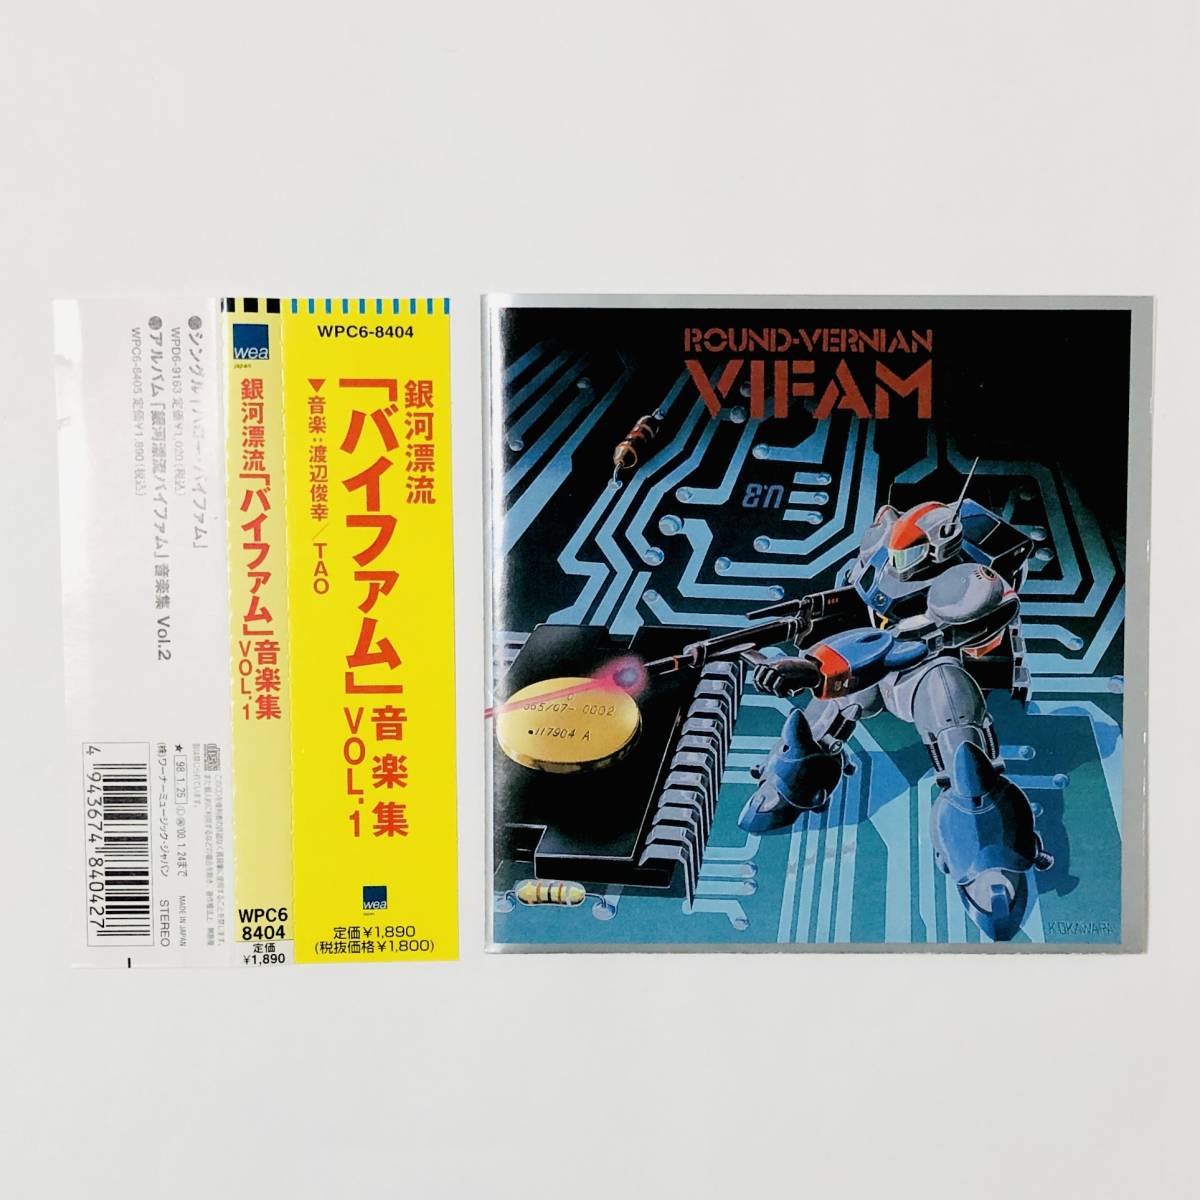 銀河漂流バイファム 音楽集 Vol.1 サントラCD 帯付き TAO Round-Vernian VIFAM Music Collection VOL.1 Original Soundtrack CD_画像7